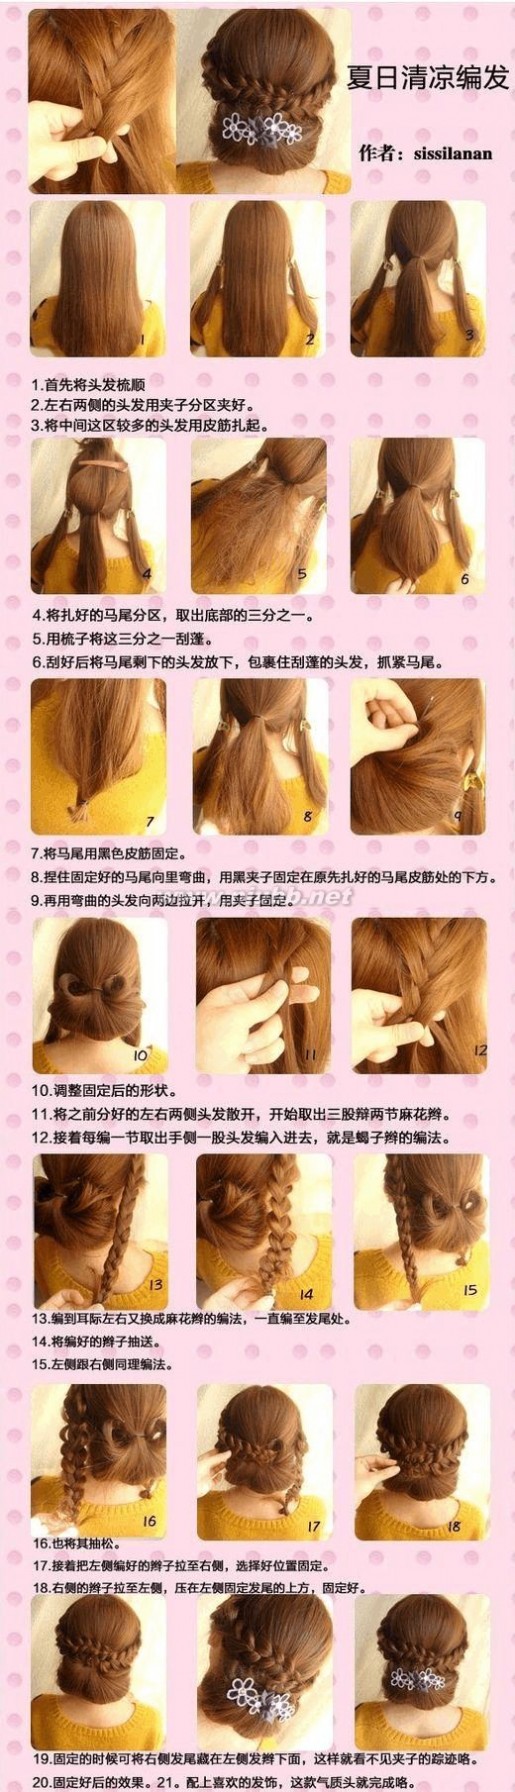 简单编发图解 30种简单好看的扎头发方法图解